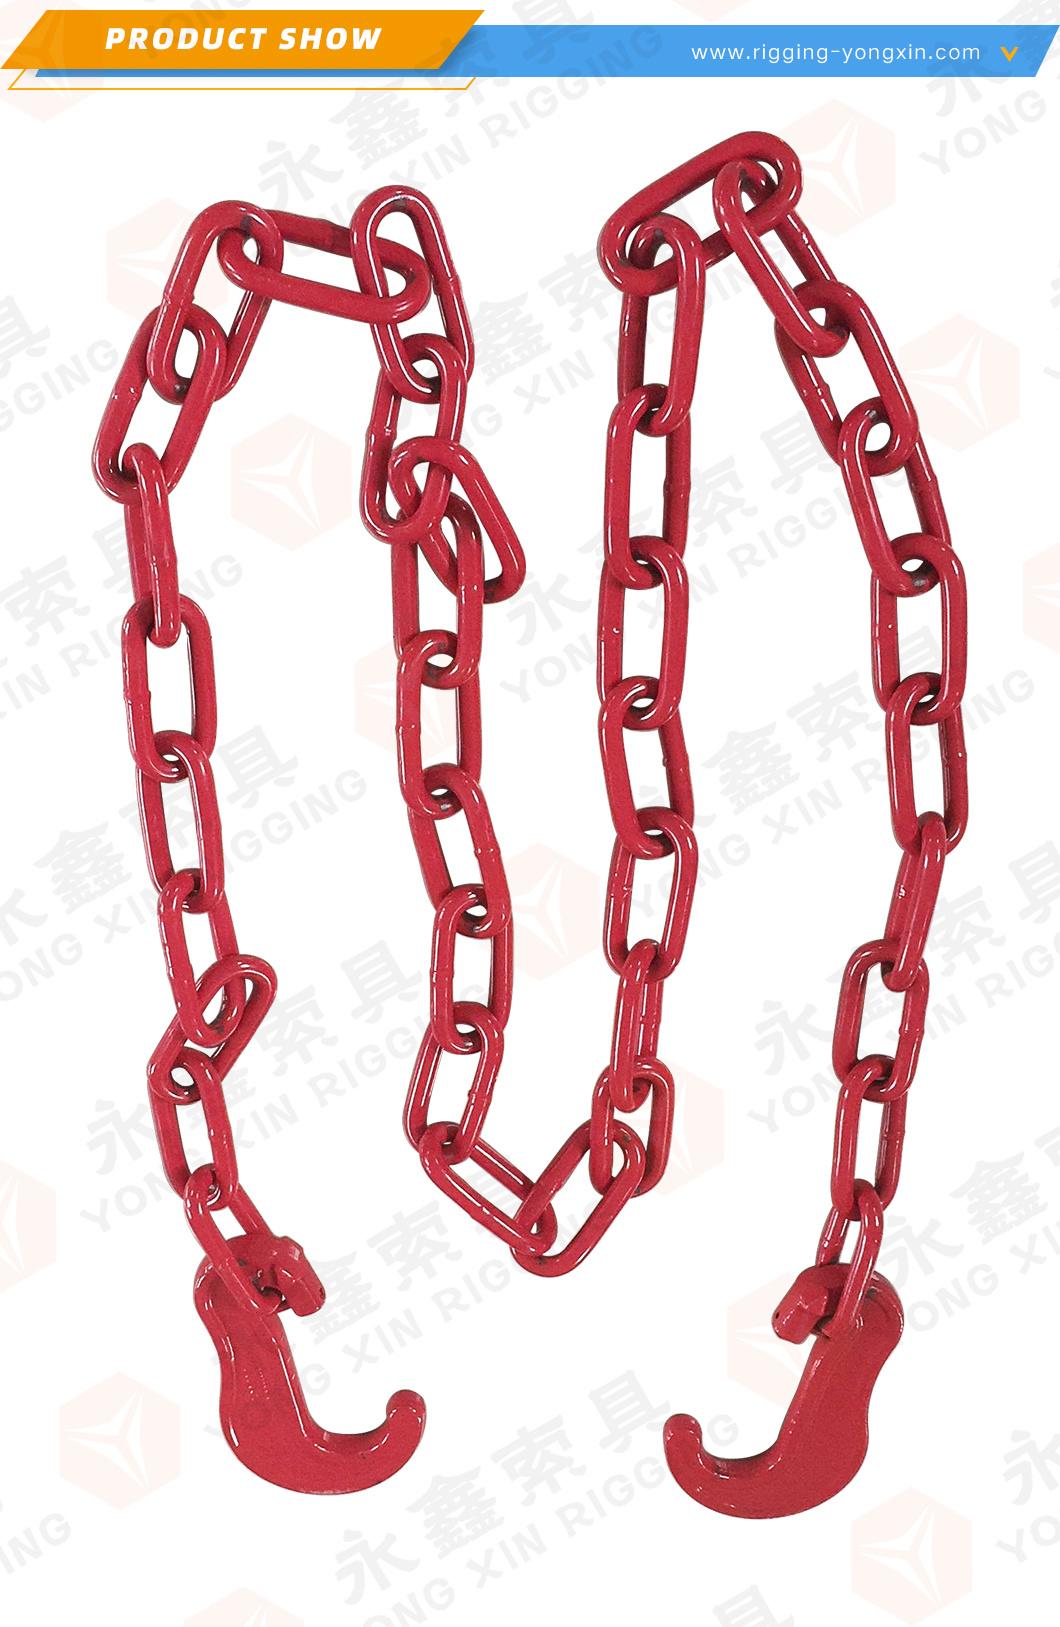 Lashing Chains Lashing Chain G80 G70 Plastic Powder Coating Lashing Chains